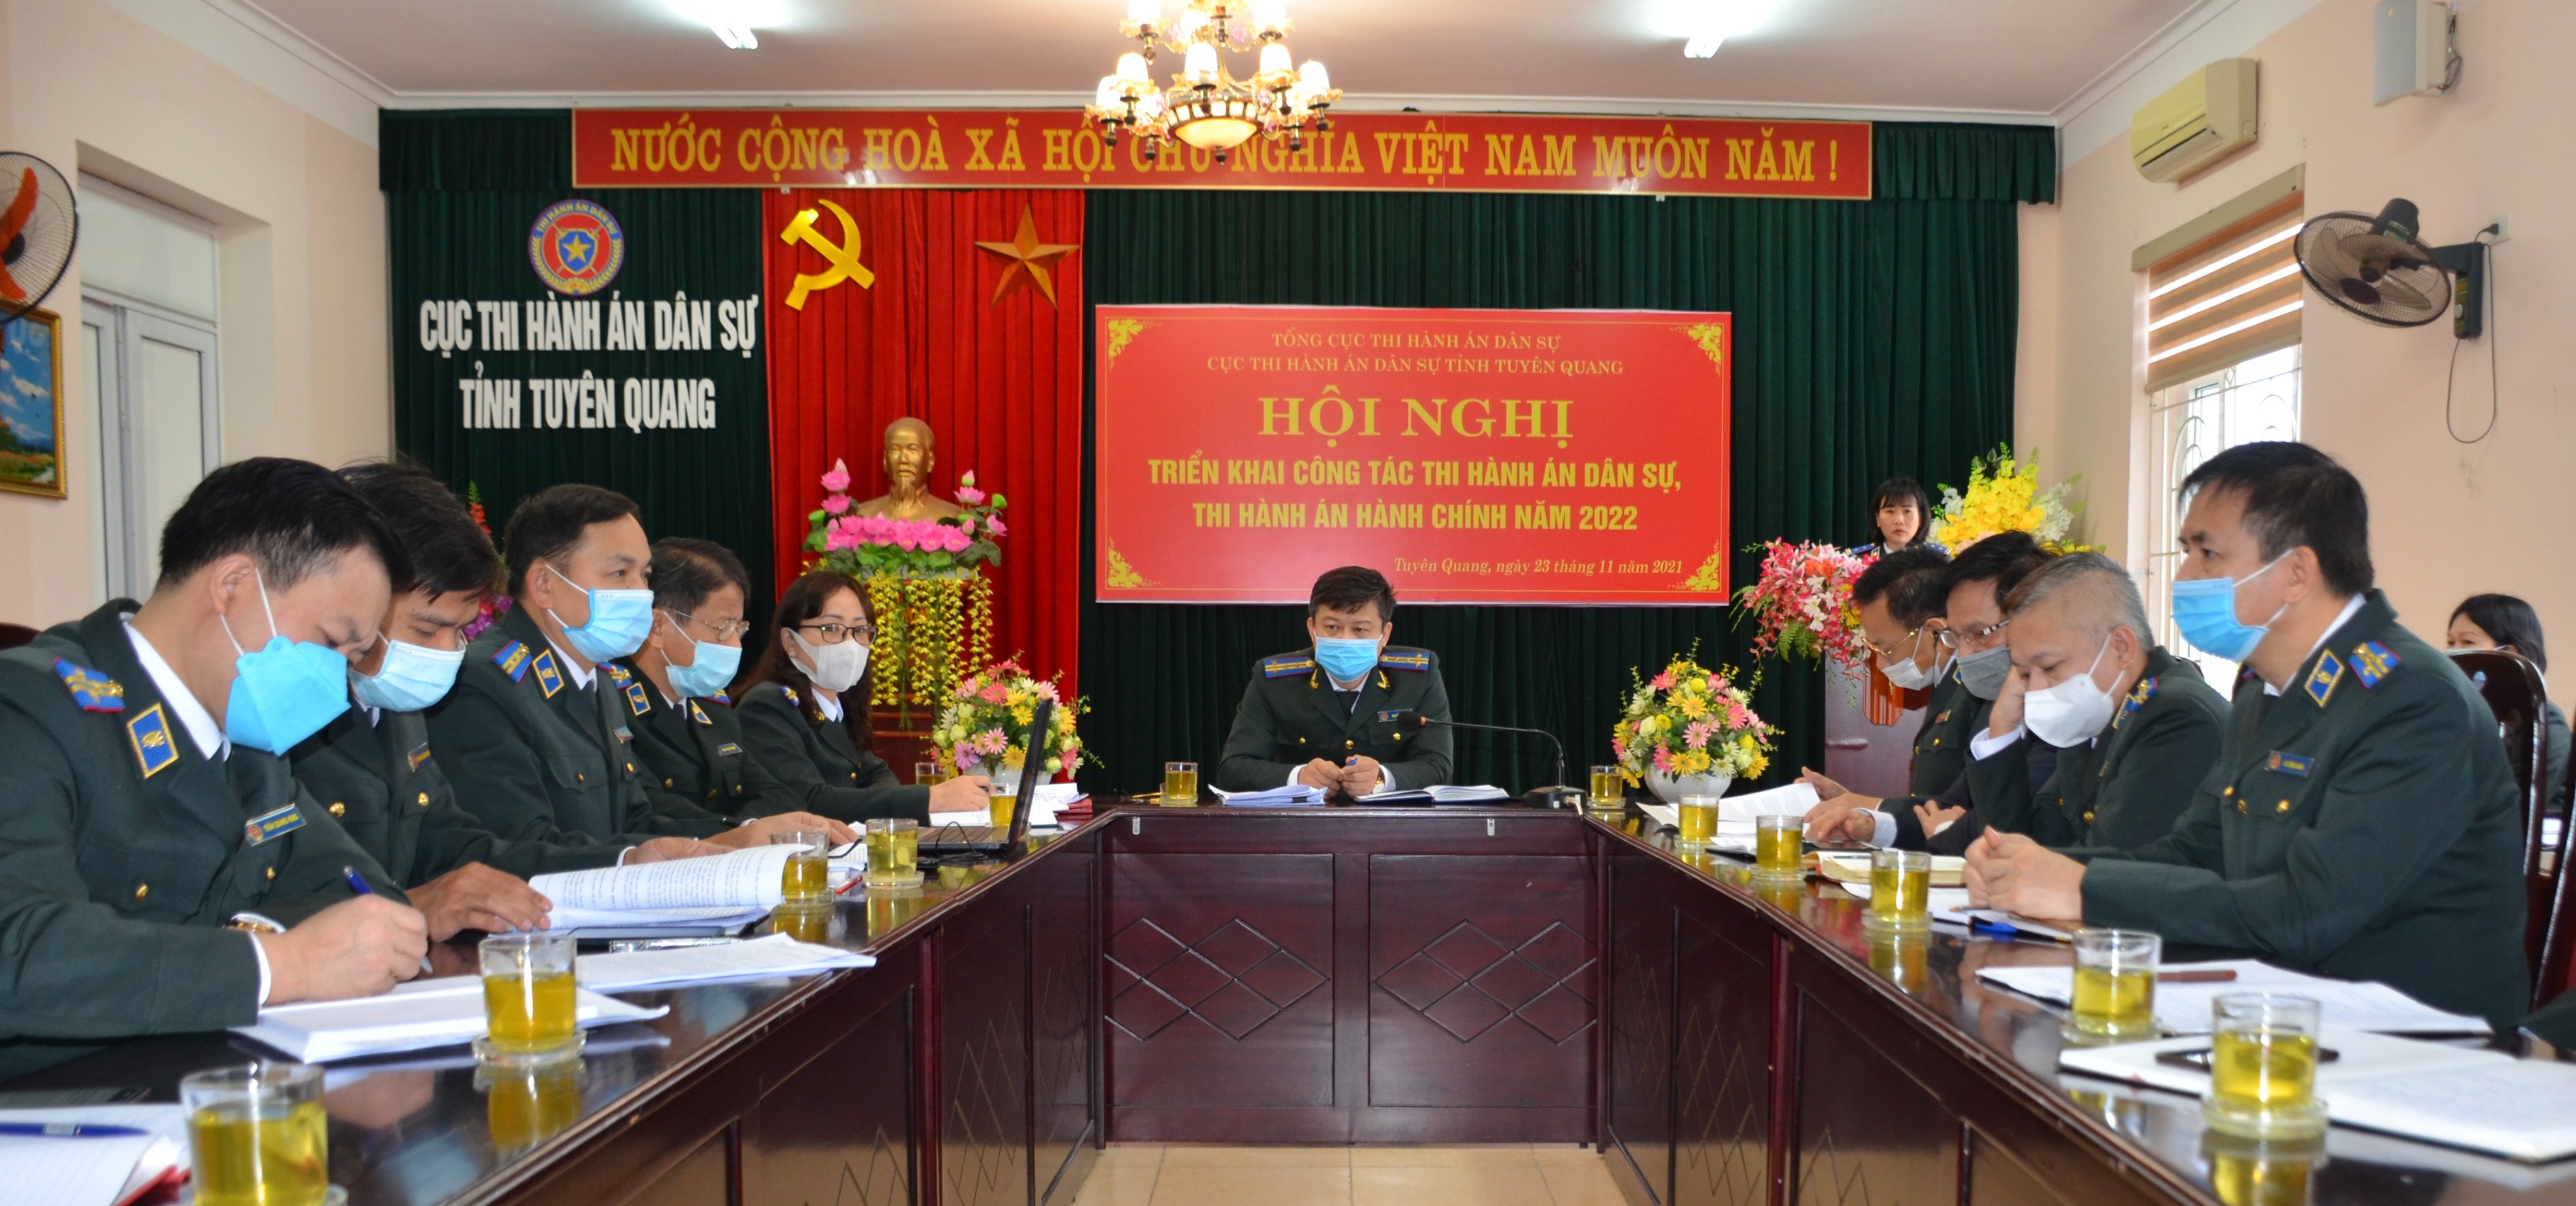 Cục THADS Tuyên Quang tổ chức Hội nghị triển khai công tác thi hành án dân sự, thi hành án hành chính năm 2022.